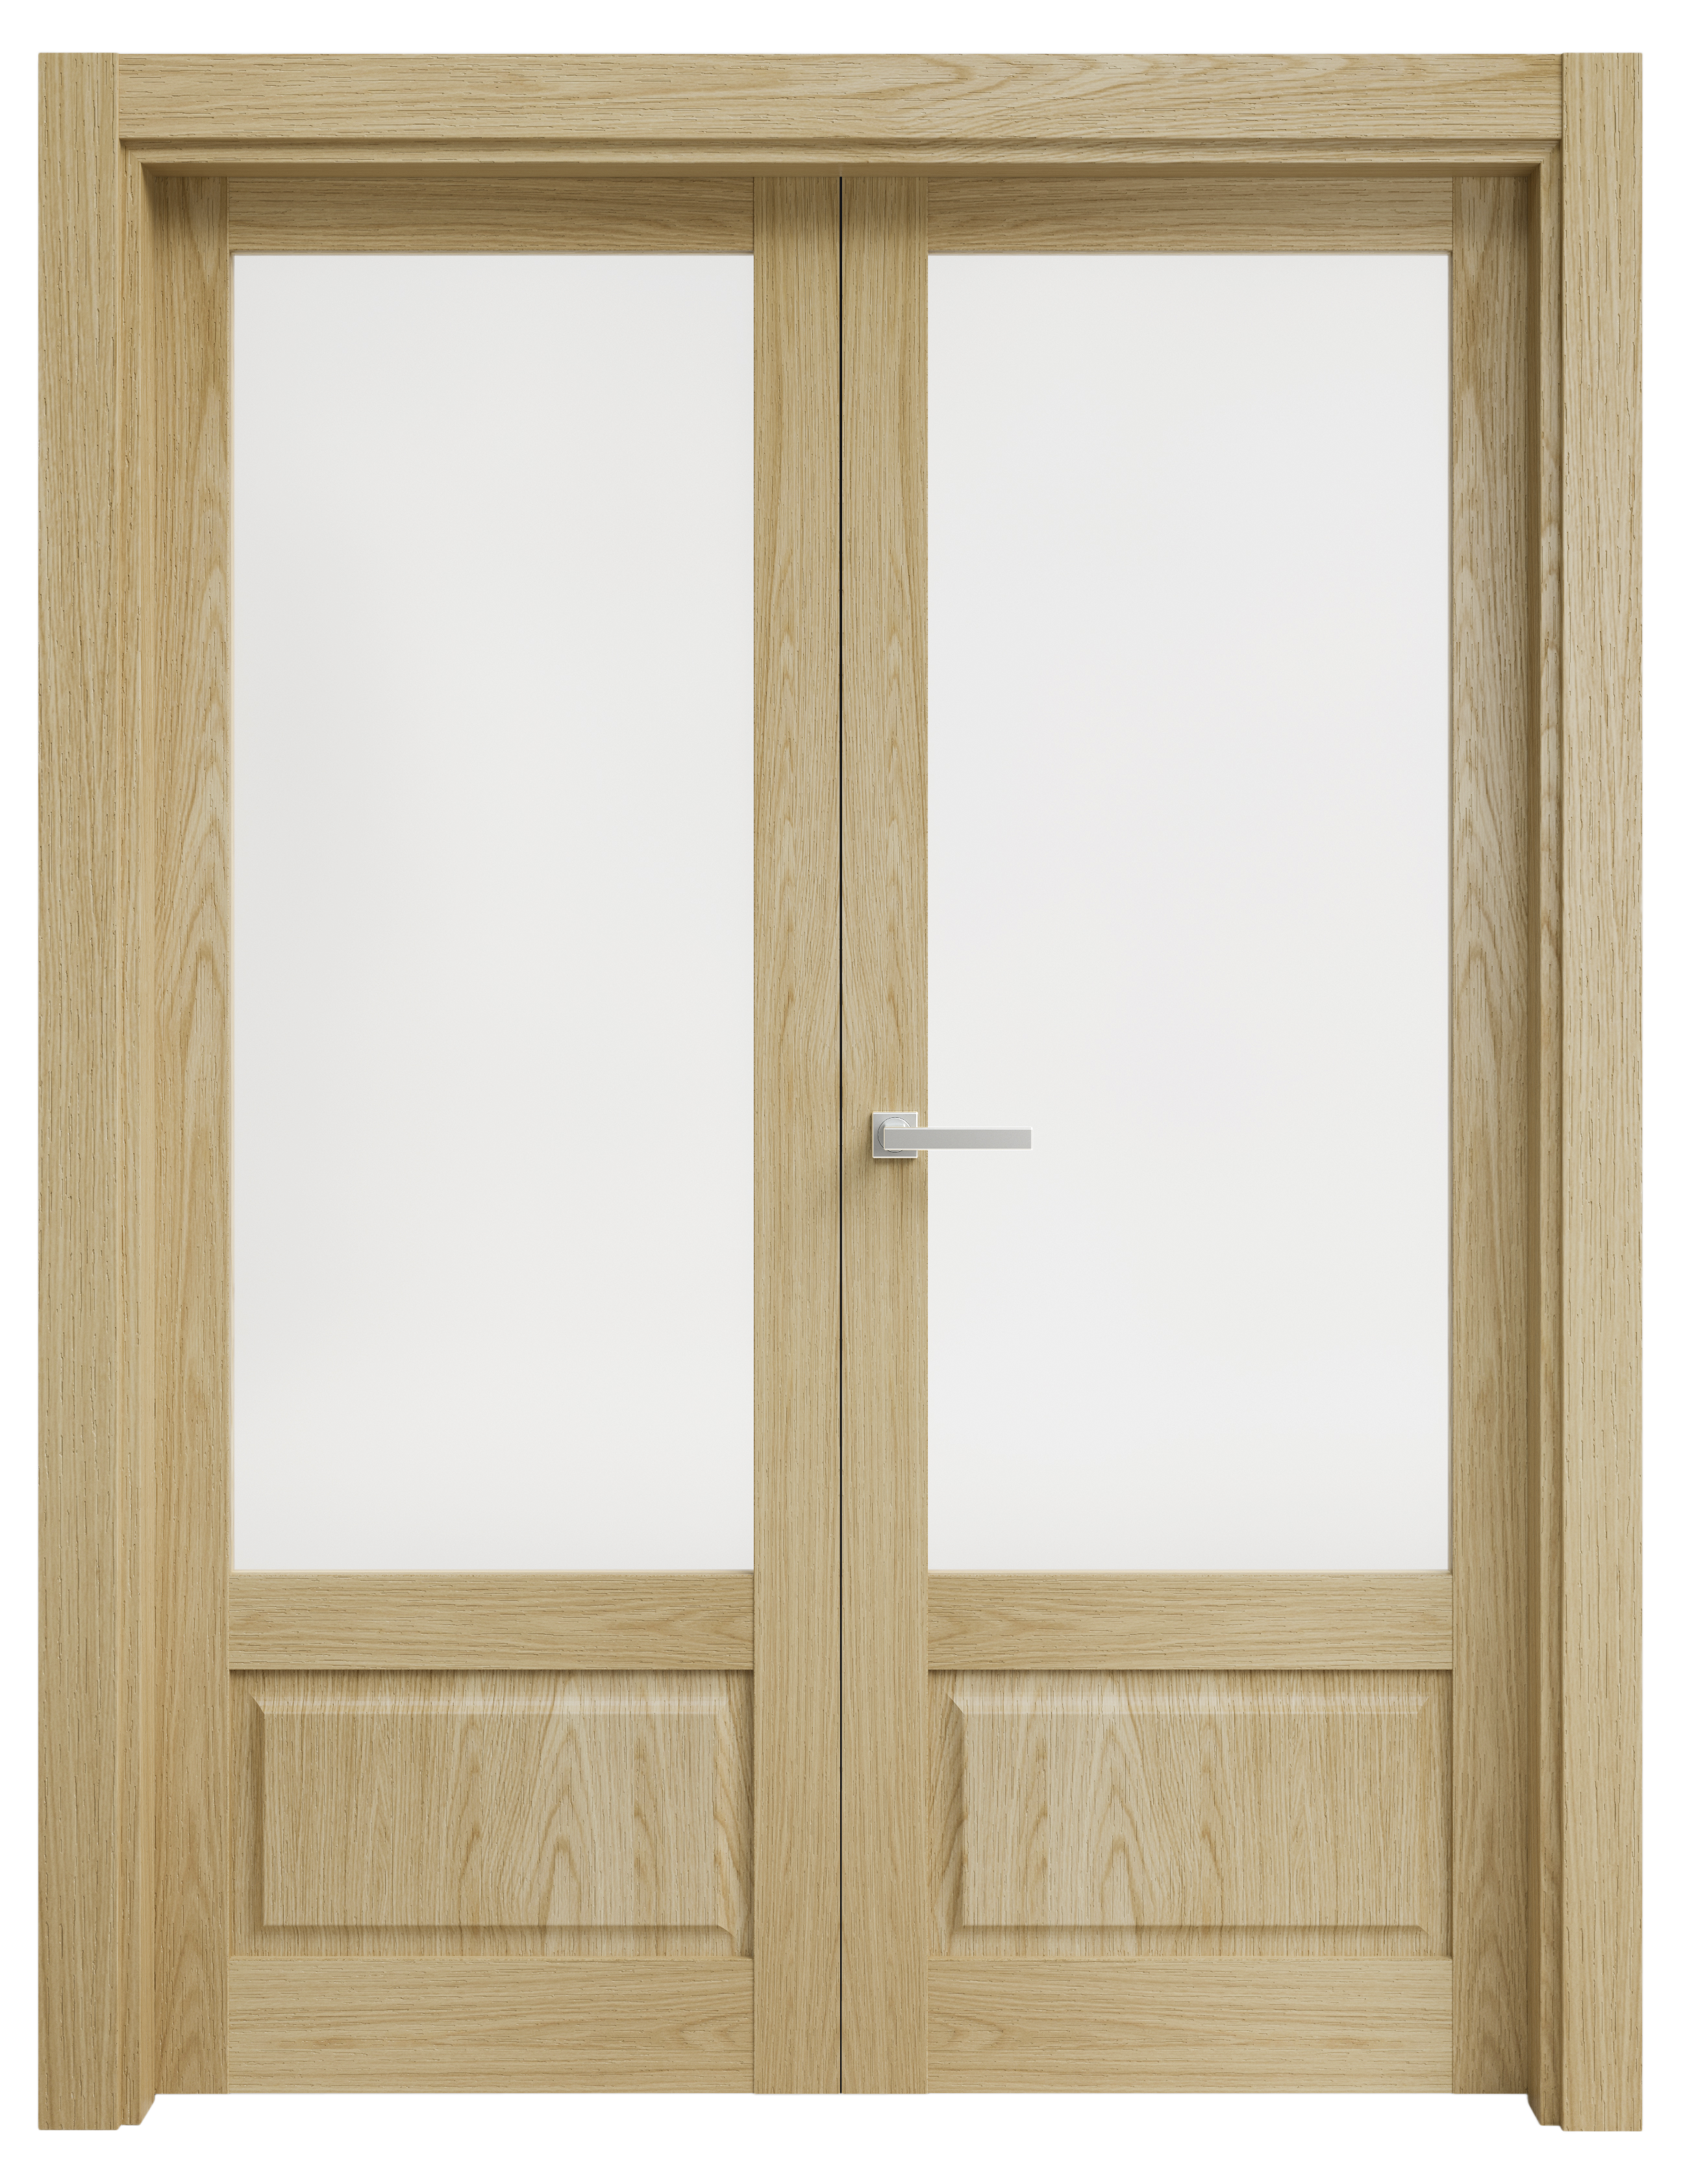 Puerta abatible sofia blanca line plus con cristal roble izquierda de 165 cm